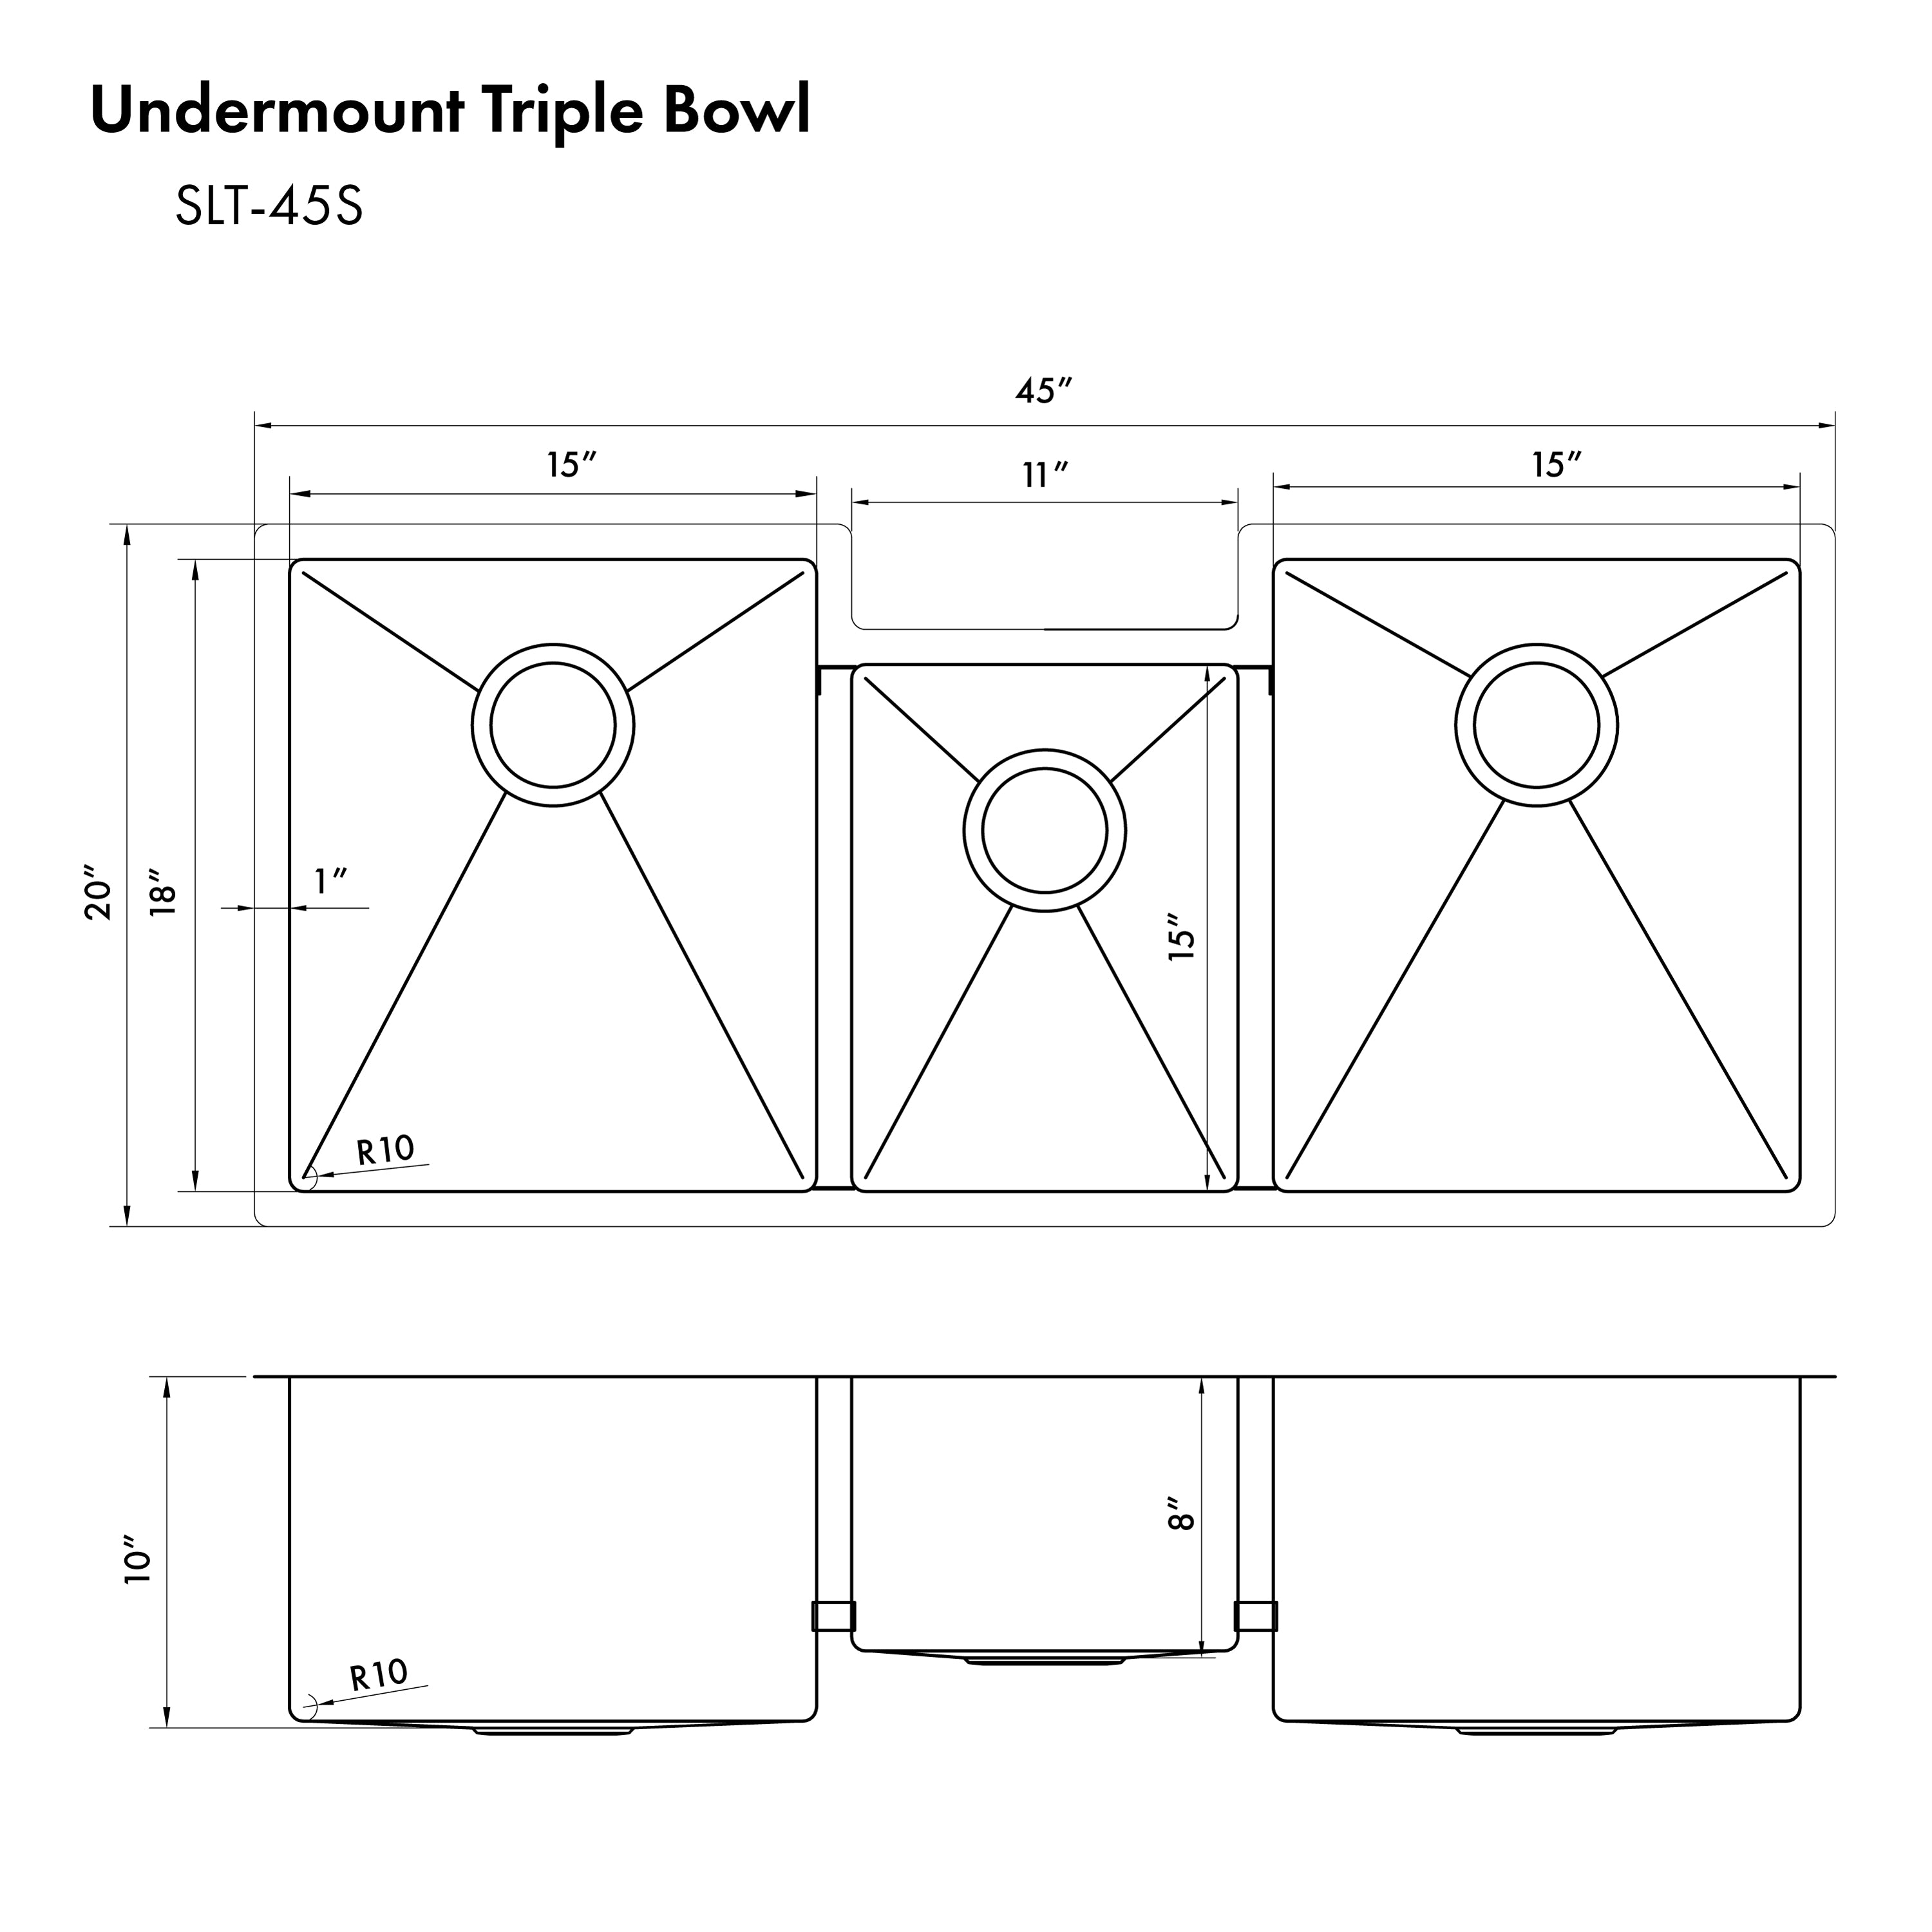 ZLINE 45 in. Breckenridge Undermount Triple Bowl Kitchen Sink (SLT-45)